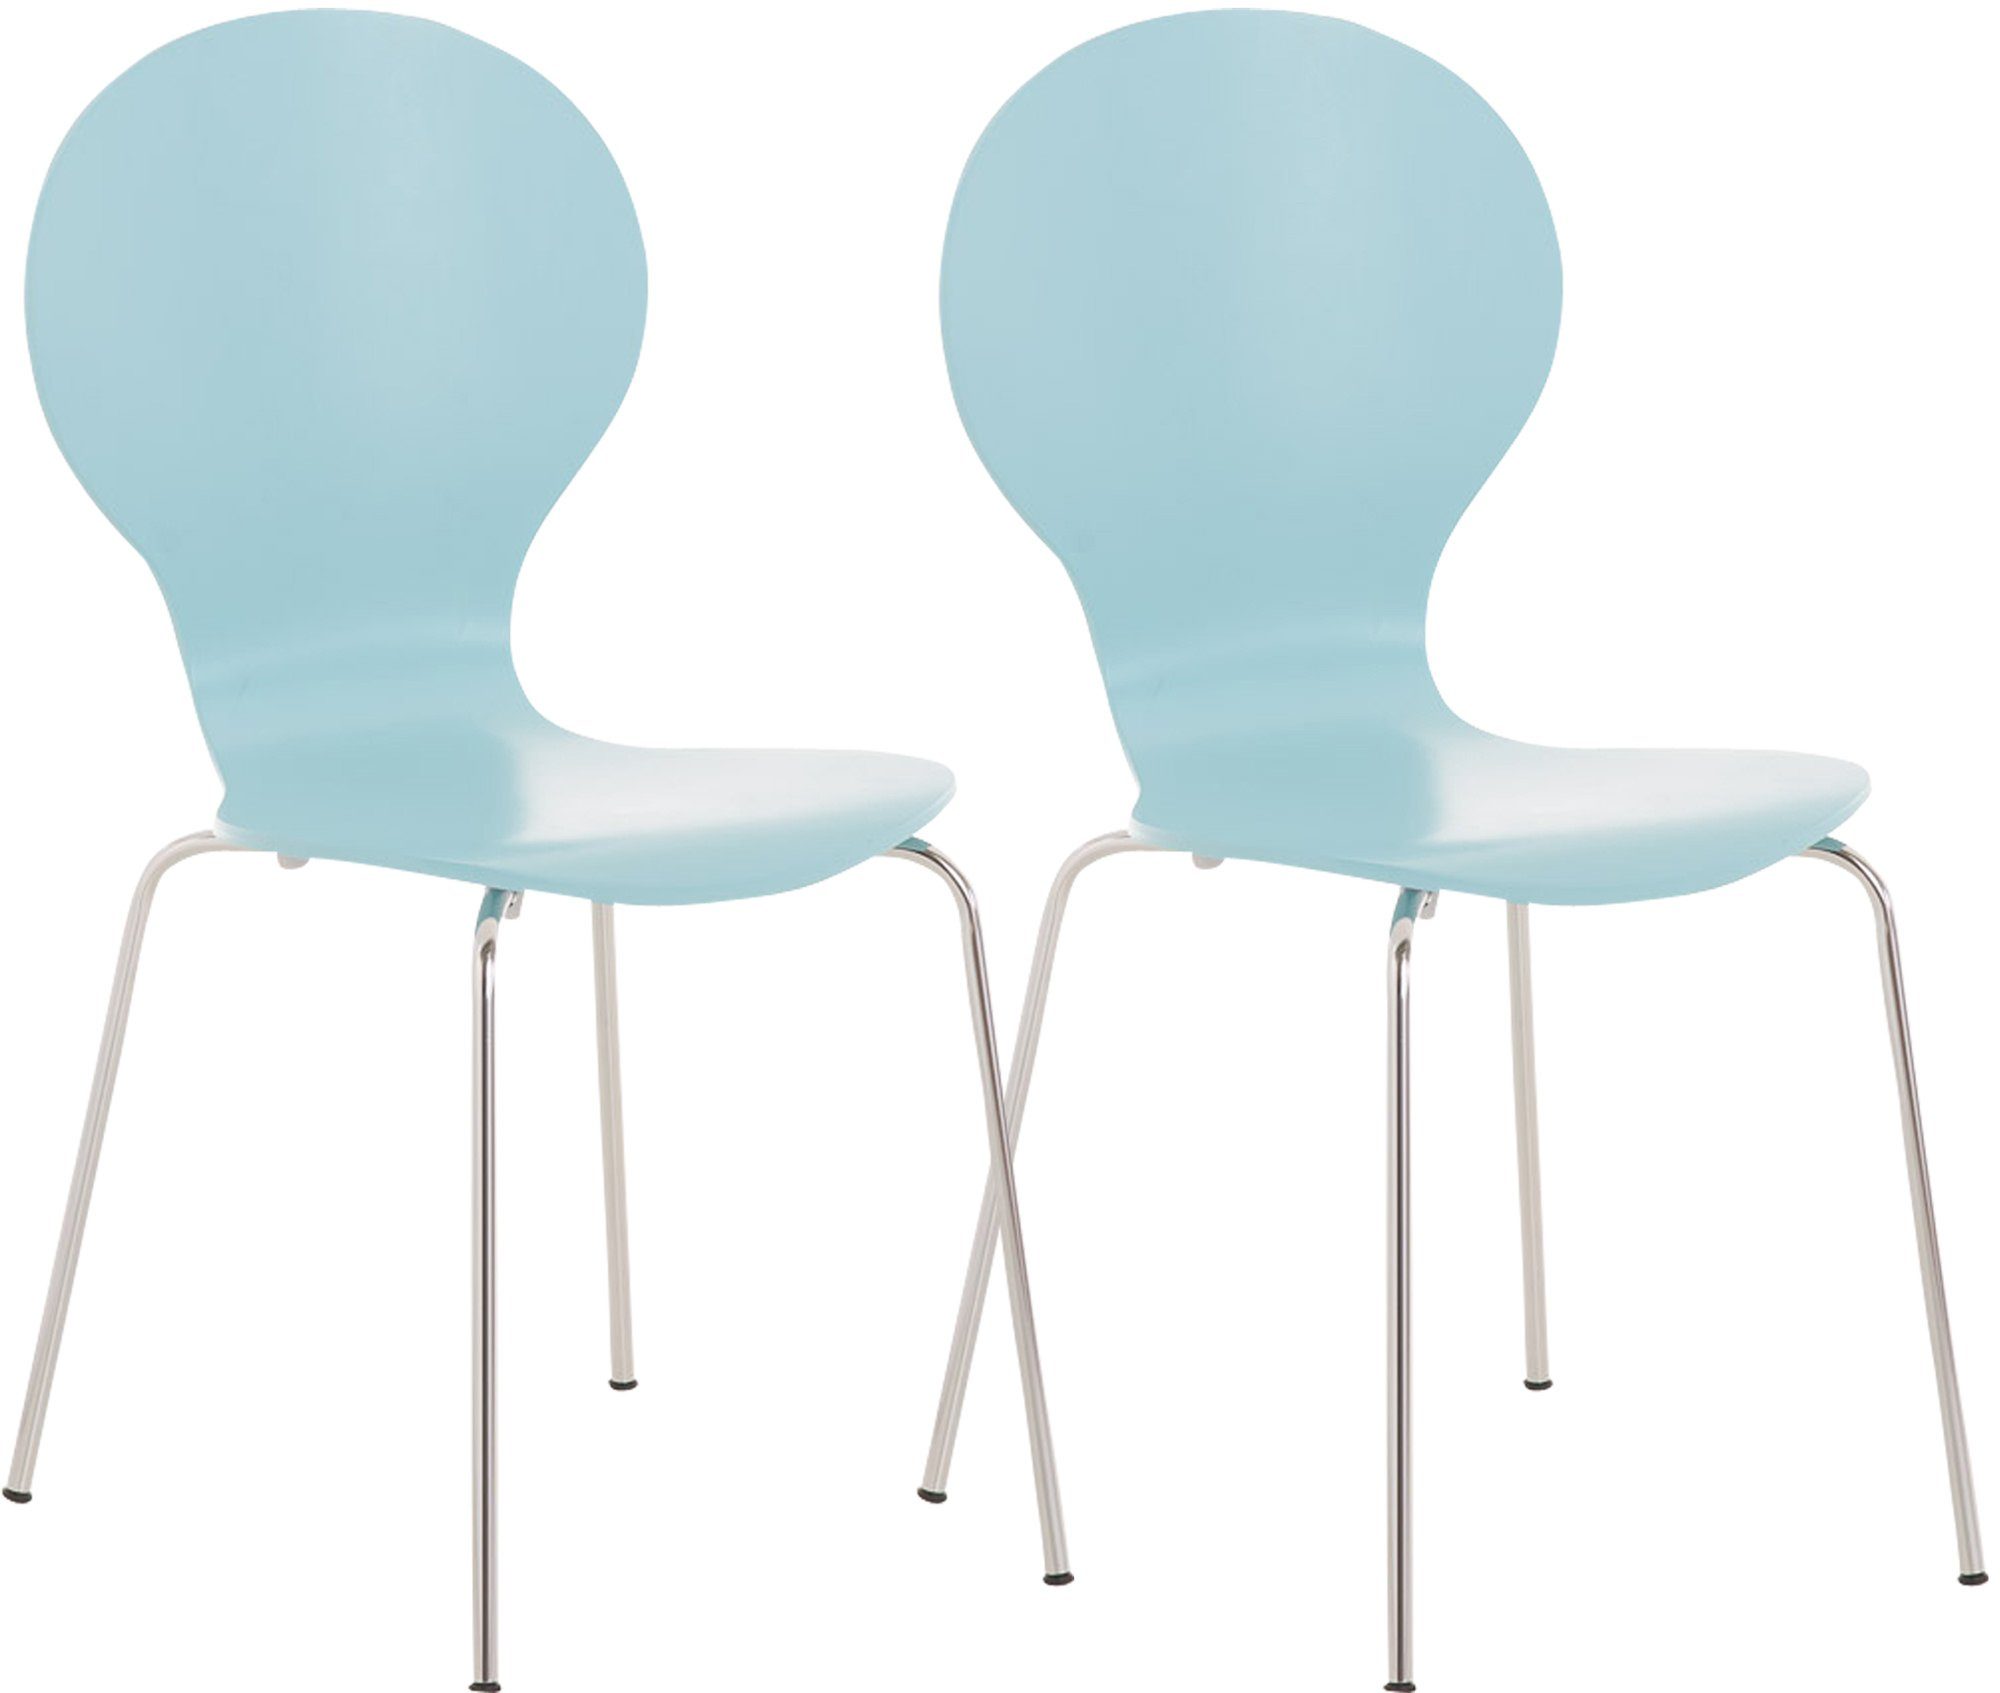 Messestuhl, TPFLiving Sitzfläche: - - St), geformter Sitzfläche Konferenzstuhl mit Besucherstuhl hellblau chrom - Warteraumstuhl Daggy 2 ergonomisch (Besprechungsstuhl Metall - Holz Gestell: